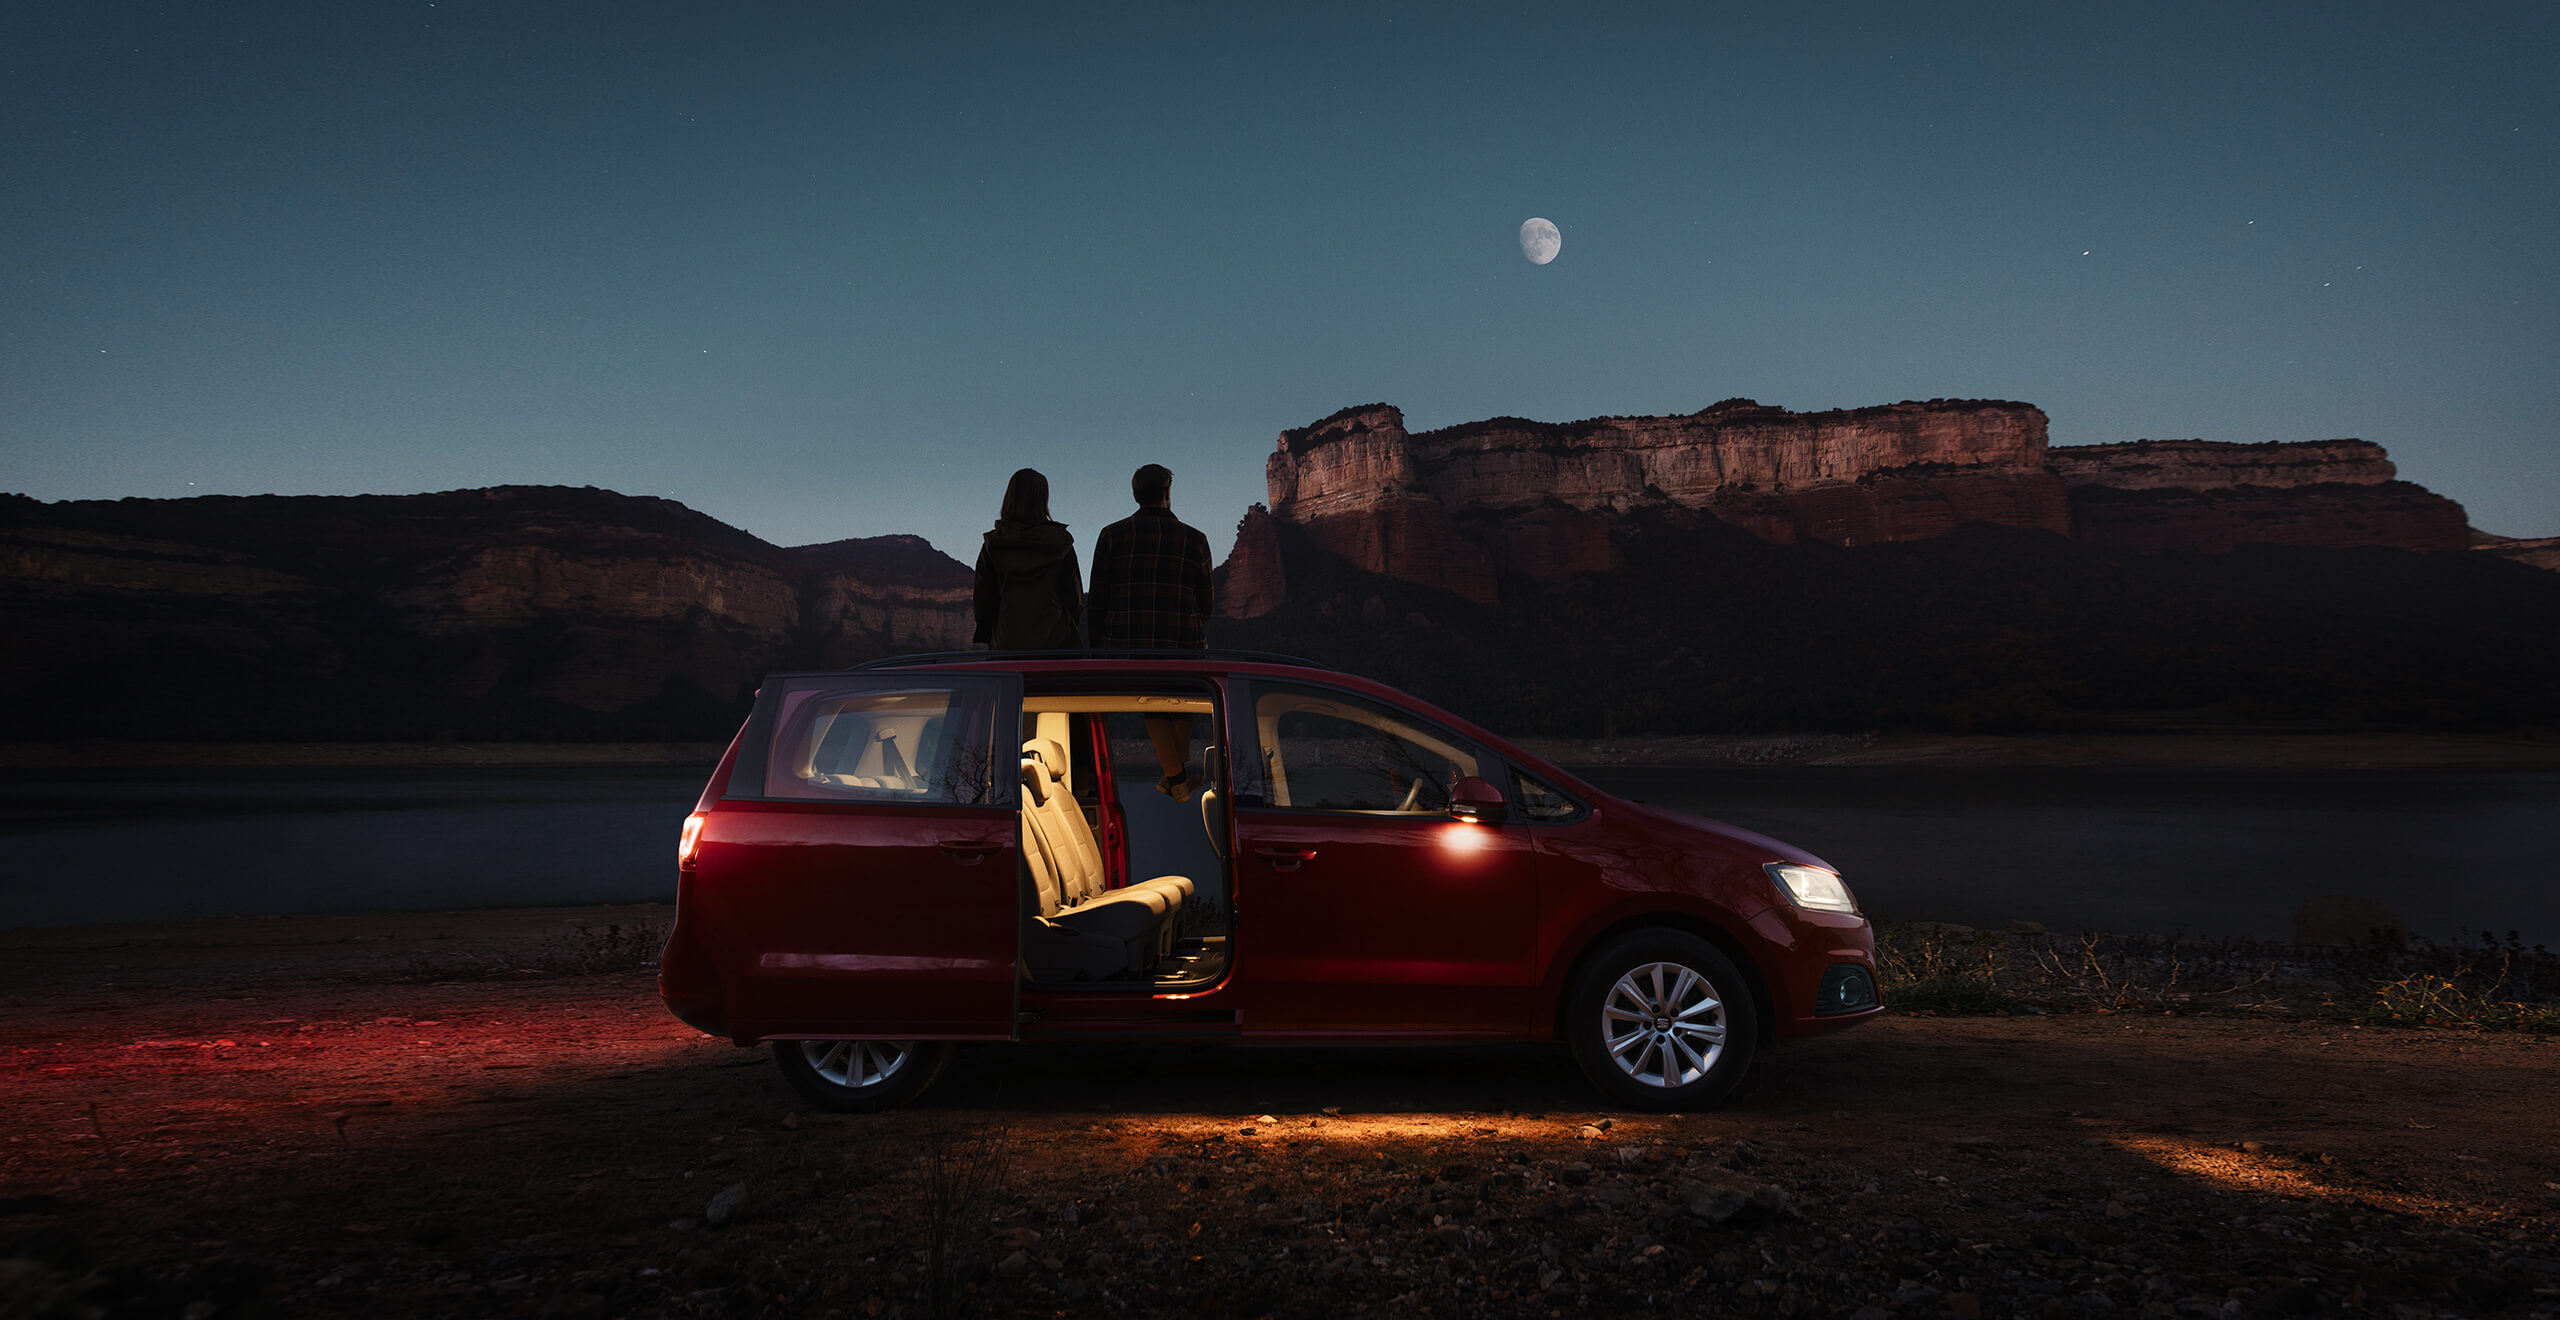 Dwójka ludzi oglądająca księżyc i gory nocą siedząc w otwartych drzwiach SEAT-a Alhambra